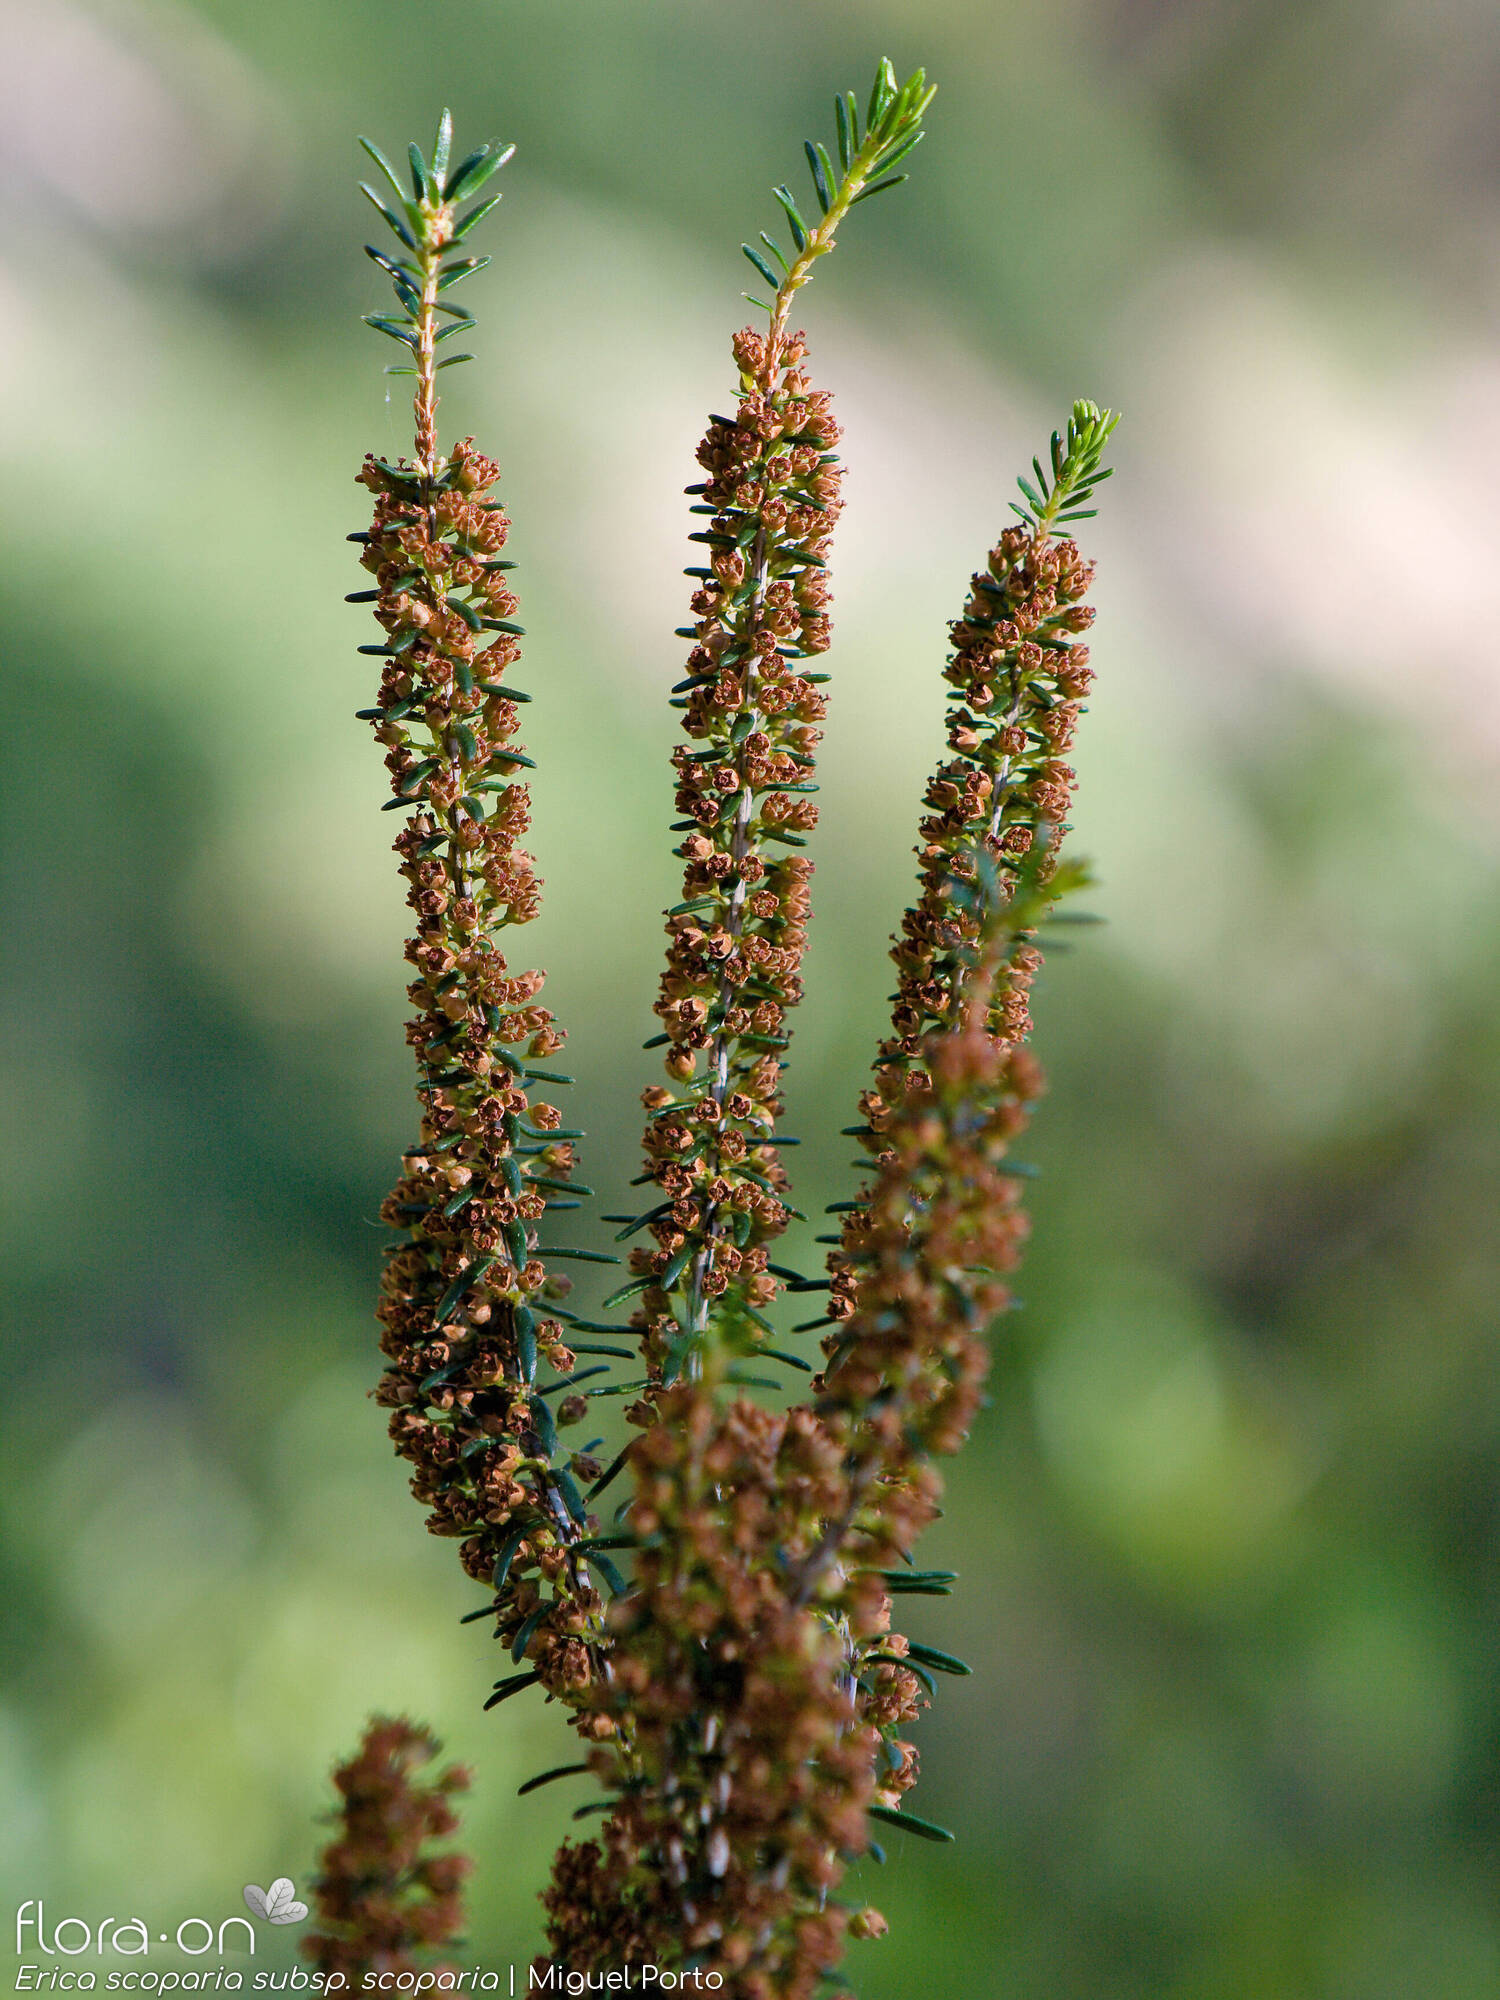 Erica scoparia scoparia - Flor (geral) | Miguel Porto; CC BY-NC 4.0